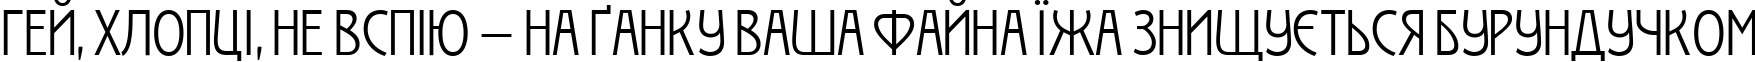 Пример написания шрифтом Izis One текста на украинском